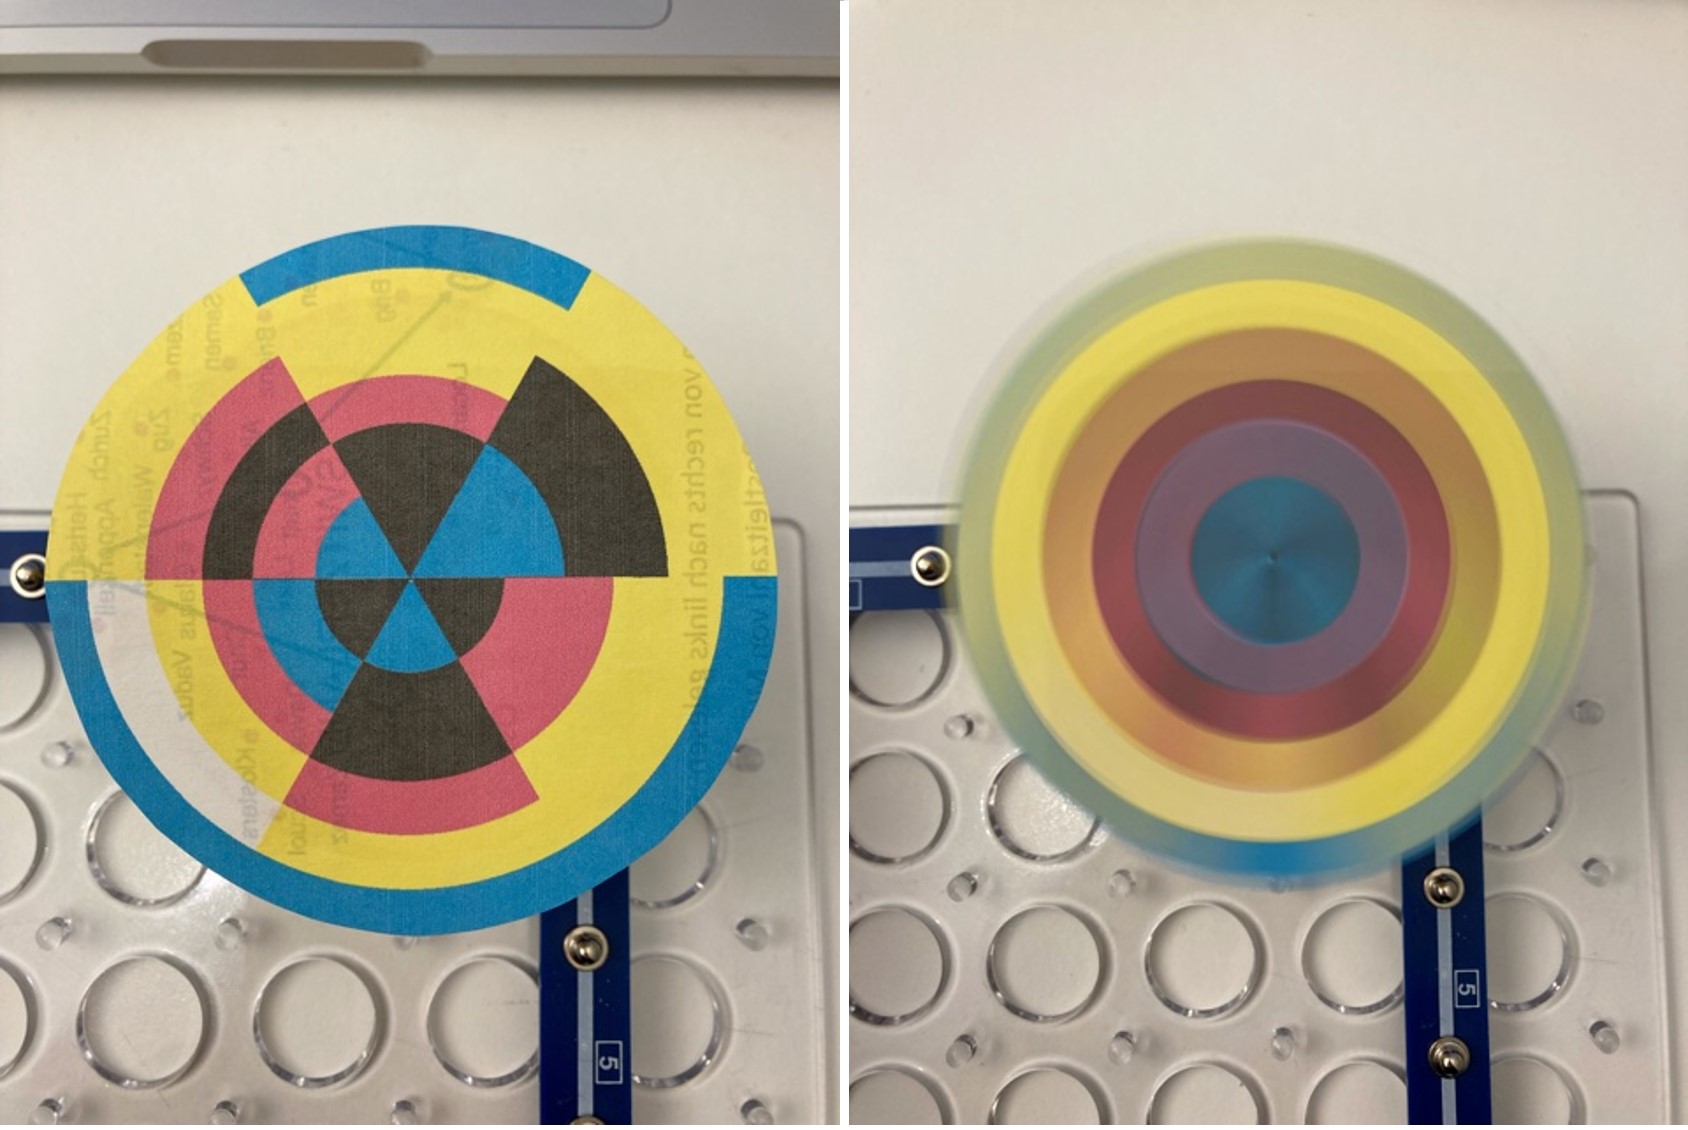 links: Farbscheibe teilweise in CMYK-Farben coloriert, rechts: dieselbe Farbscheibe in Rotation, wobei die Farben als konzentrische Kreise erscheinen